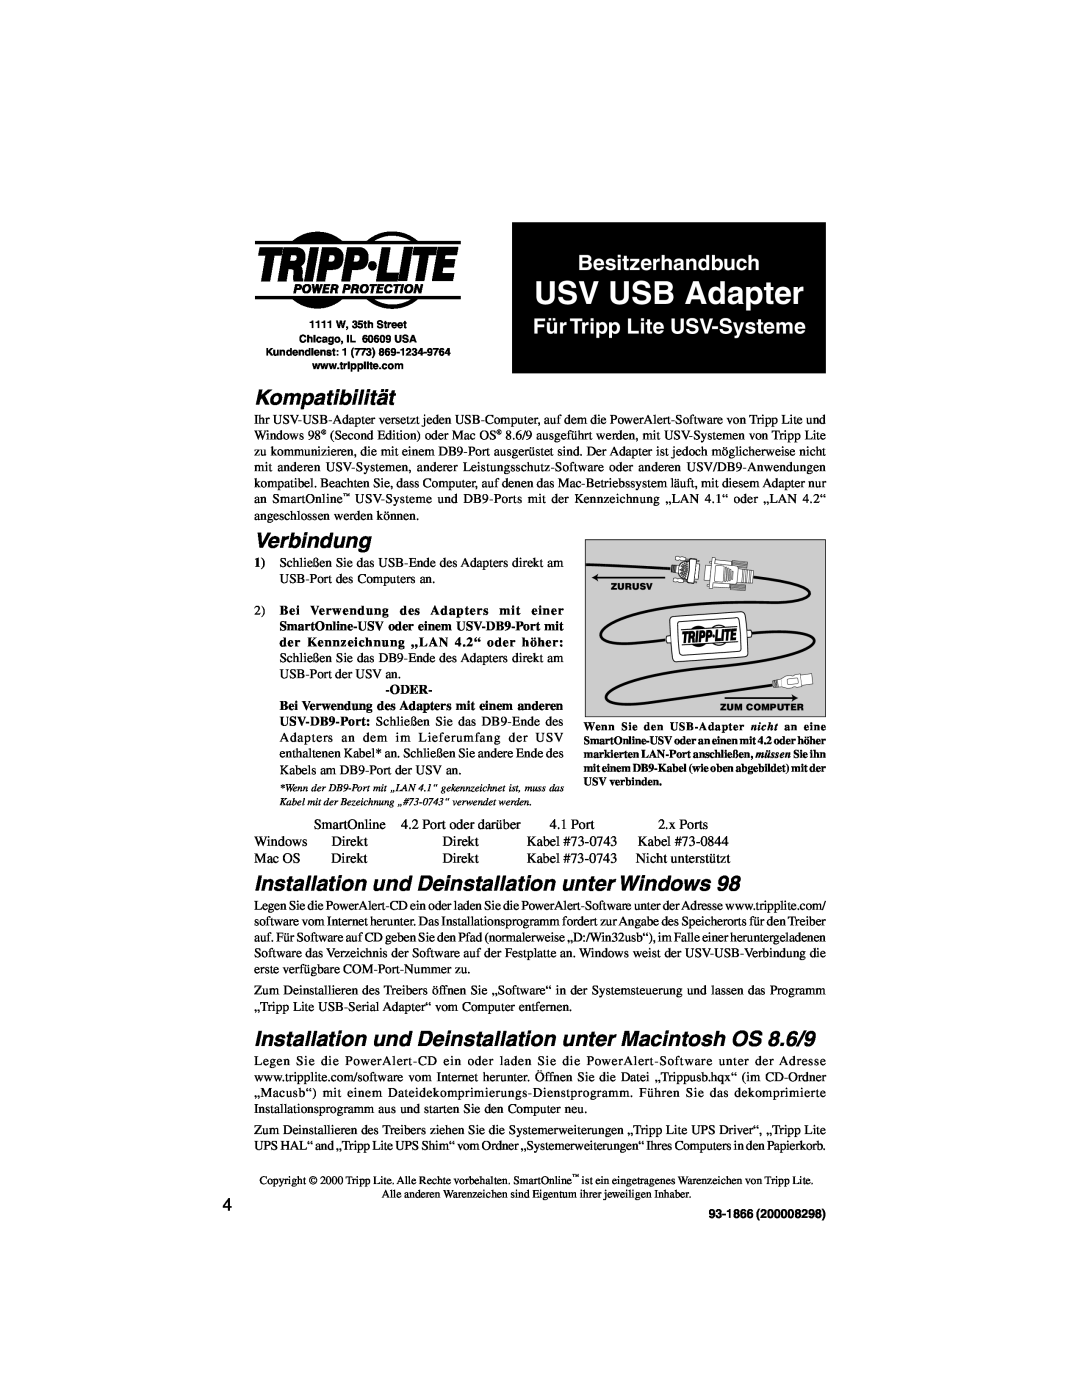 Tripp Lite UPS USB Adapter USV USB Adapter, Besitzerhandbuch, Für Tripp Lite USV-Systeme, Kompatibilität, Verbindung 